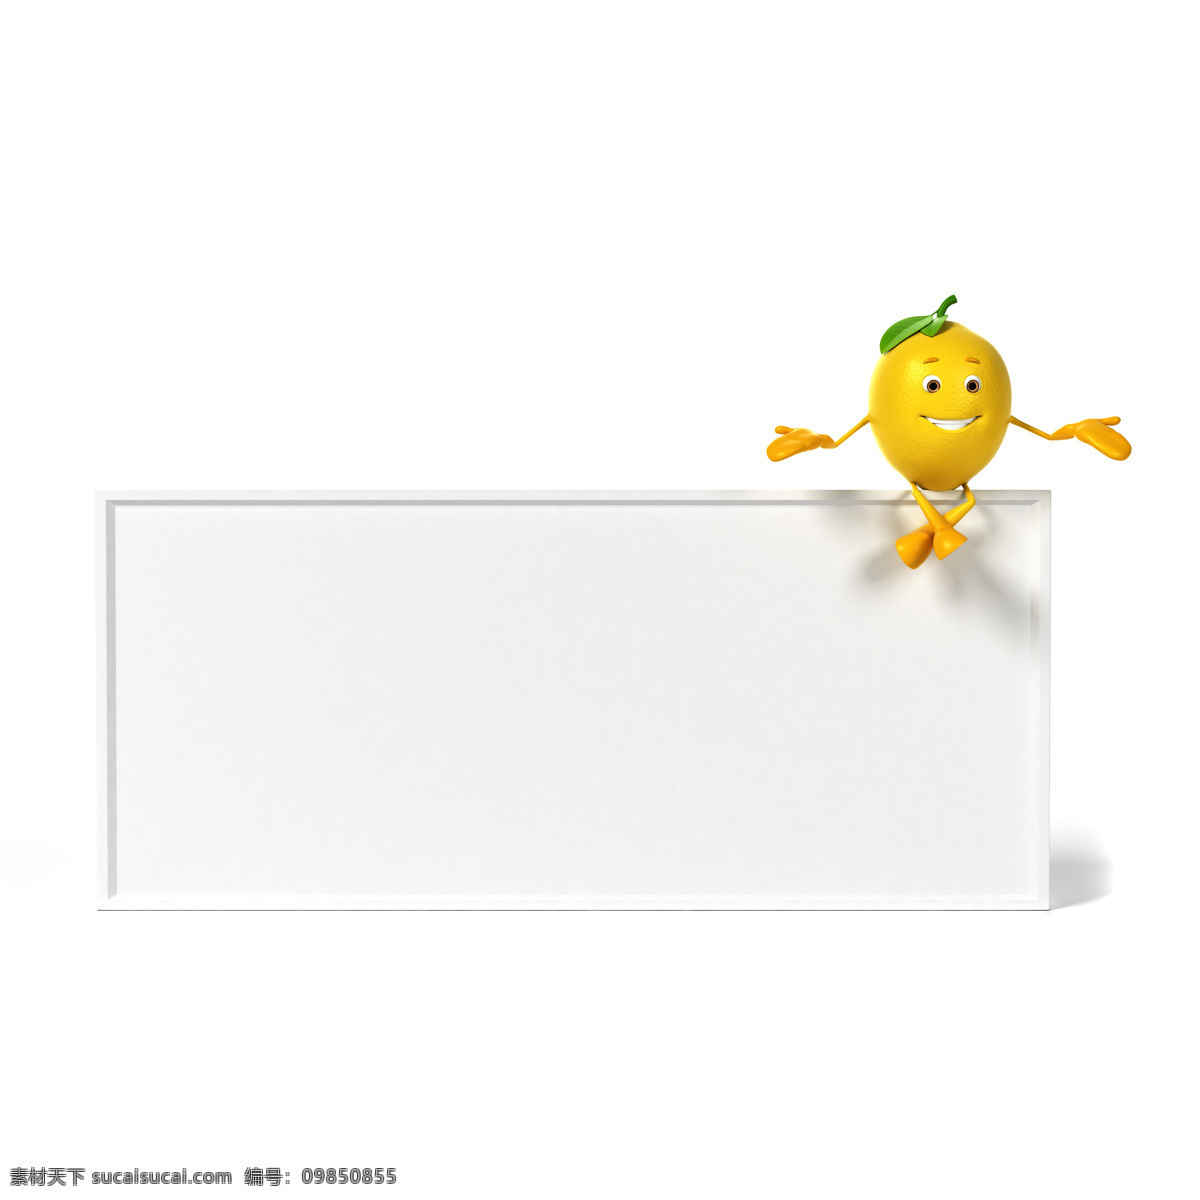 坐在 白板 上 柠檬 叶子 可爱 水果 卡通 其他类别 生活百科 白色